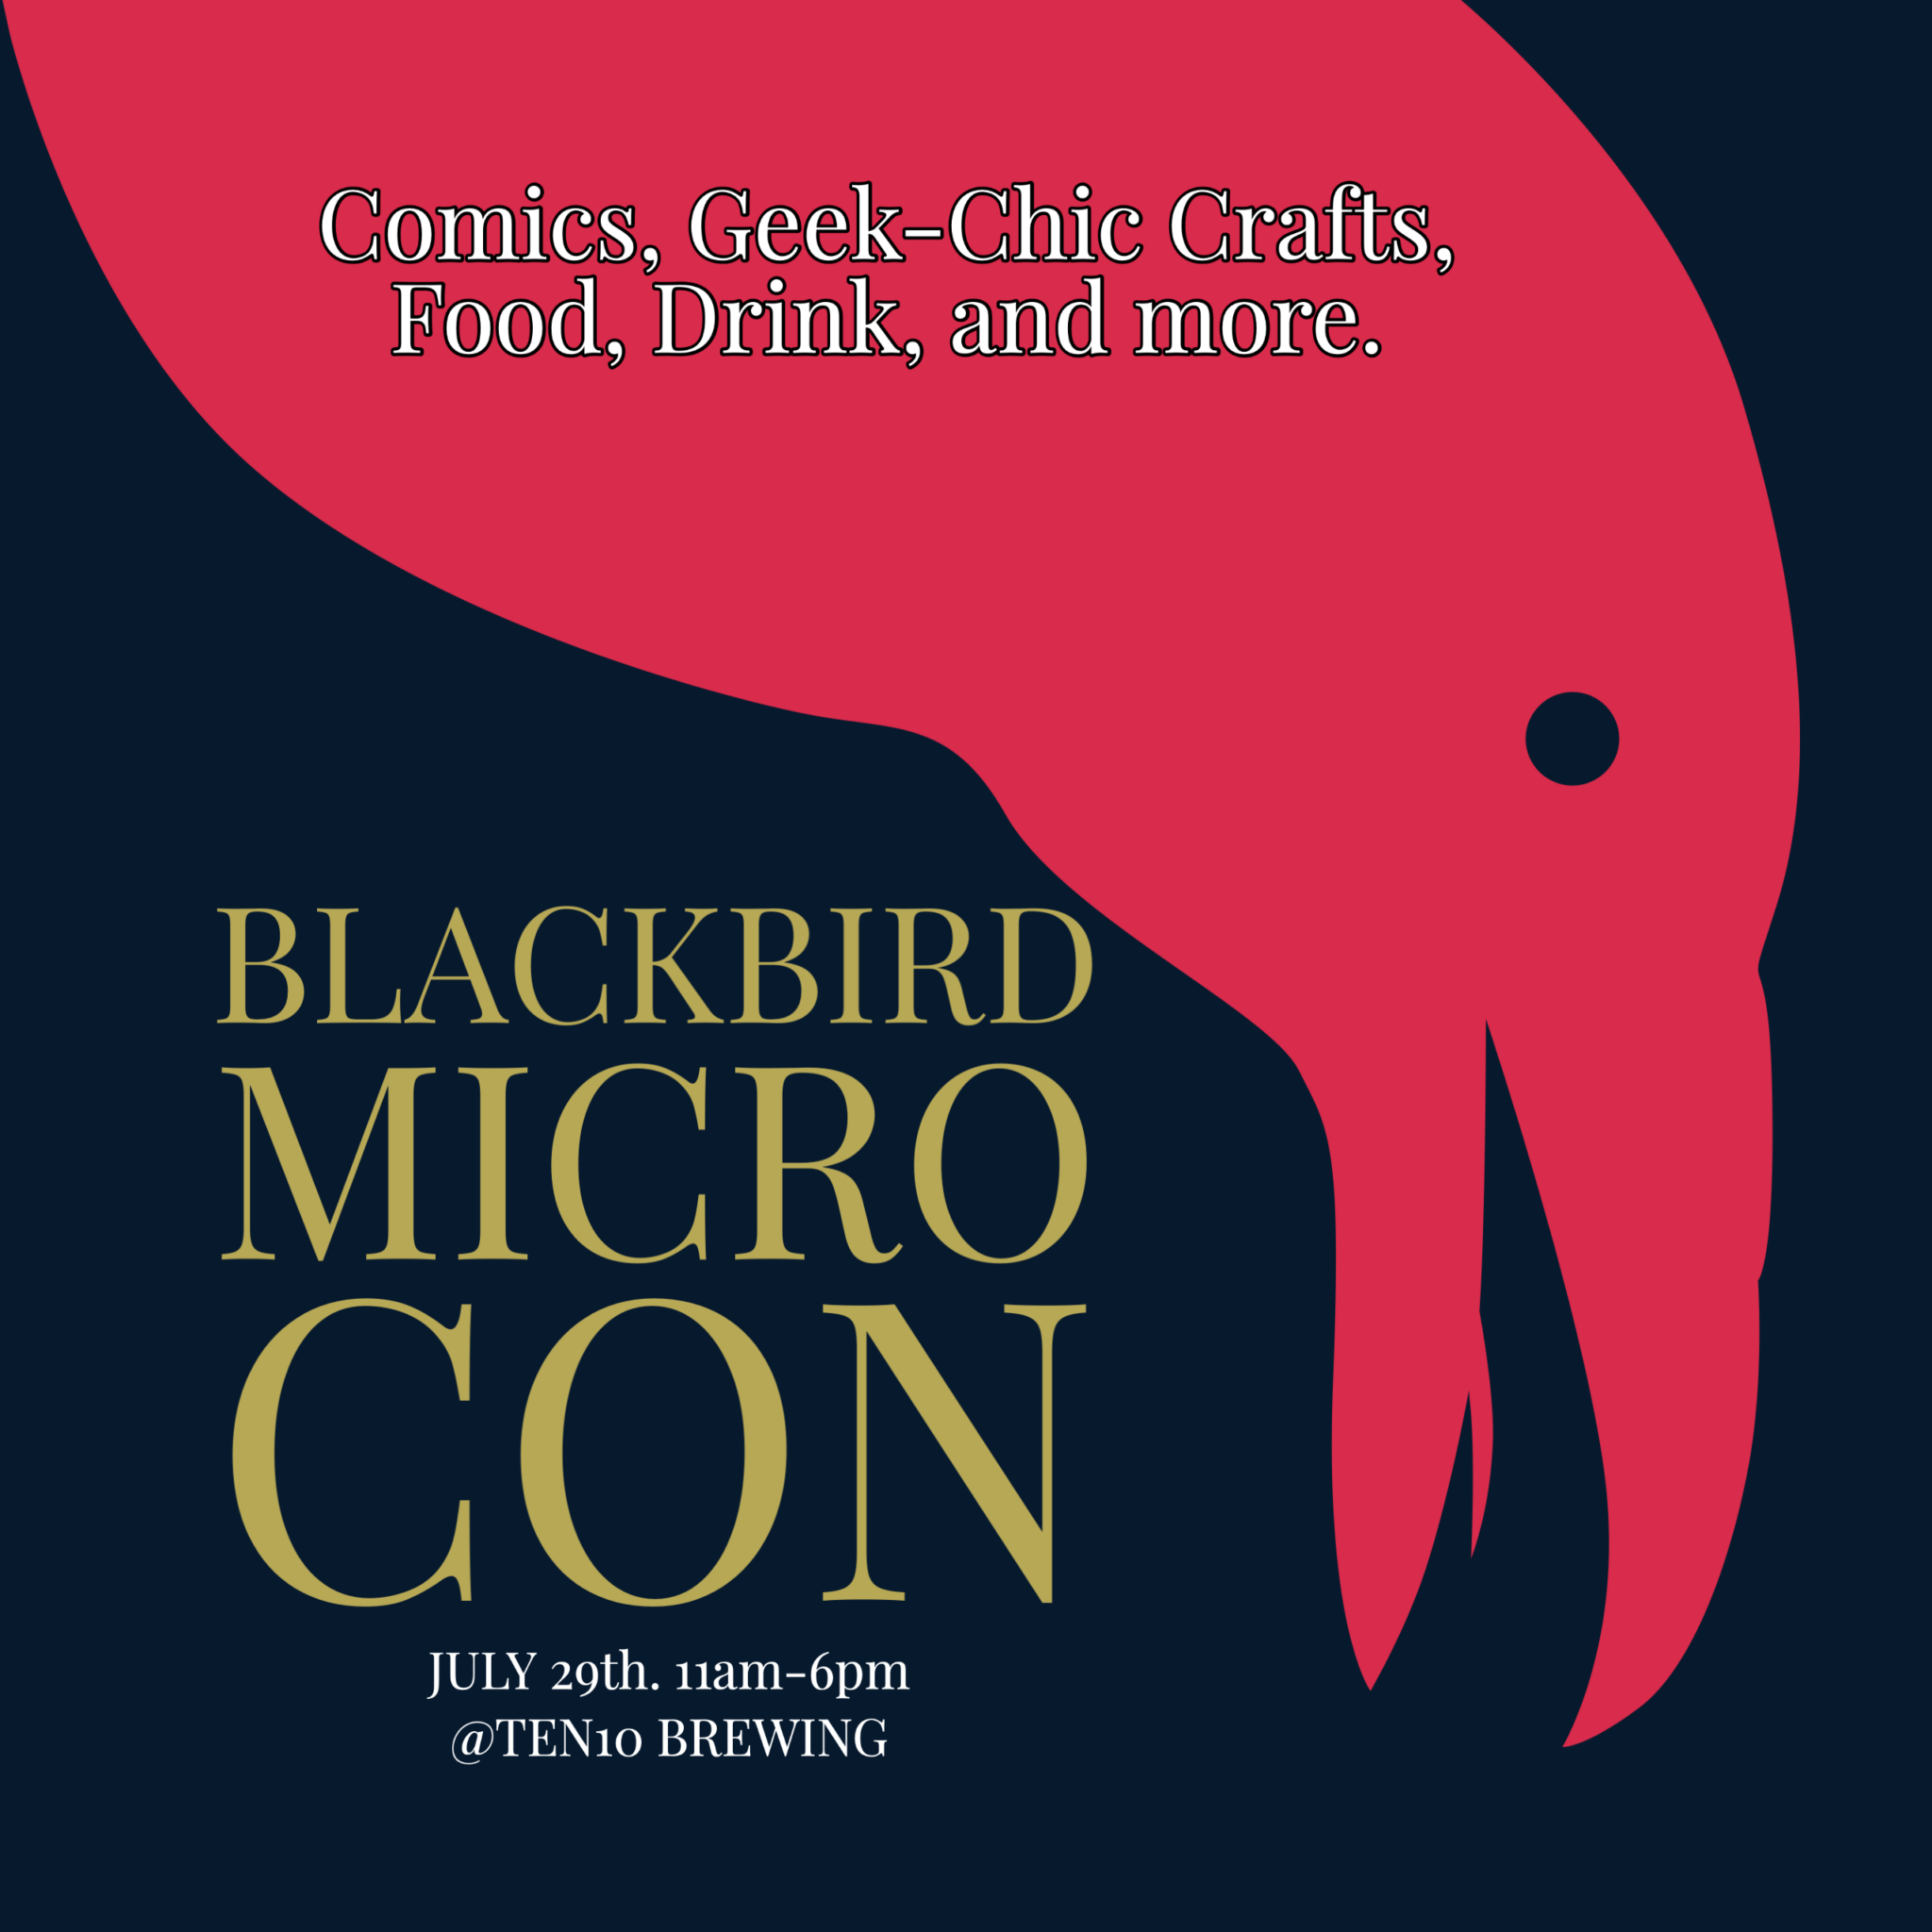 BLACKBIRD MICROCON JULY